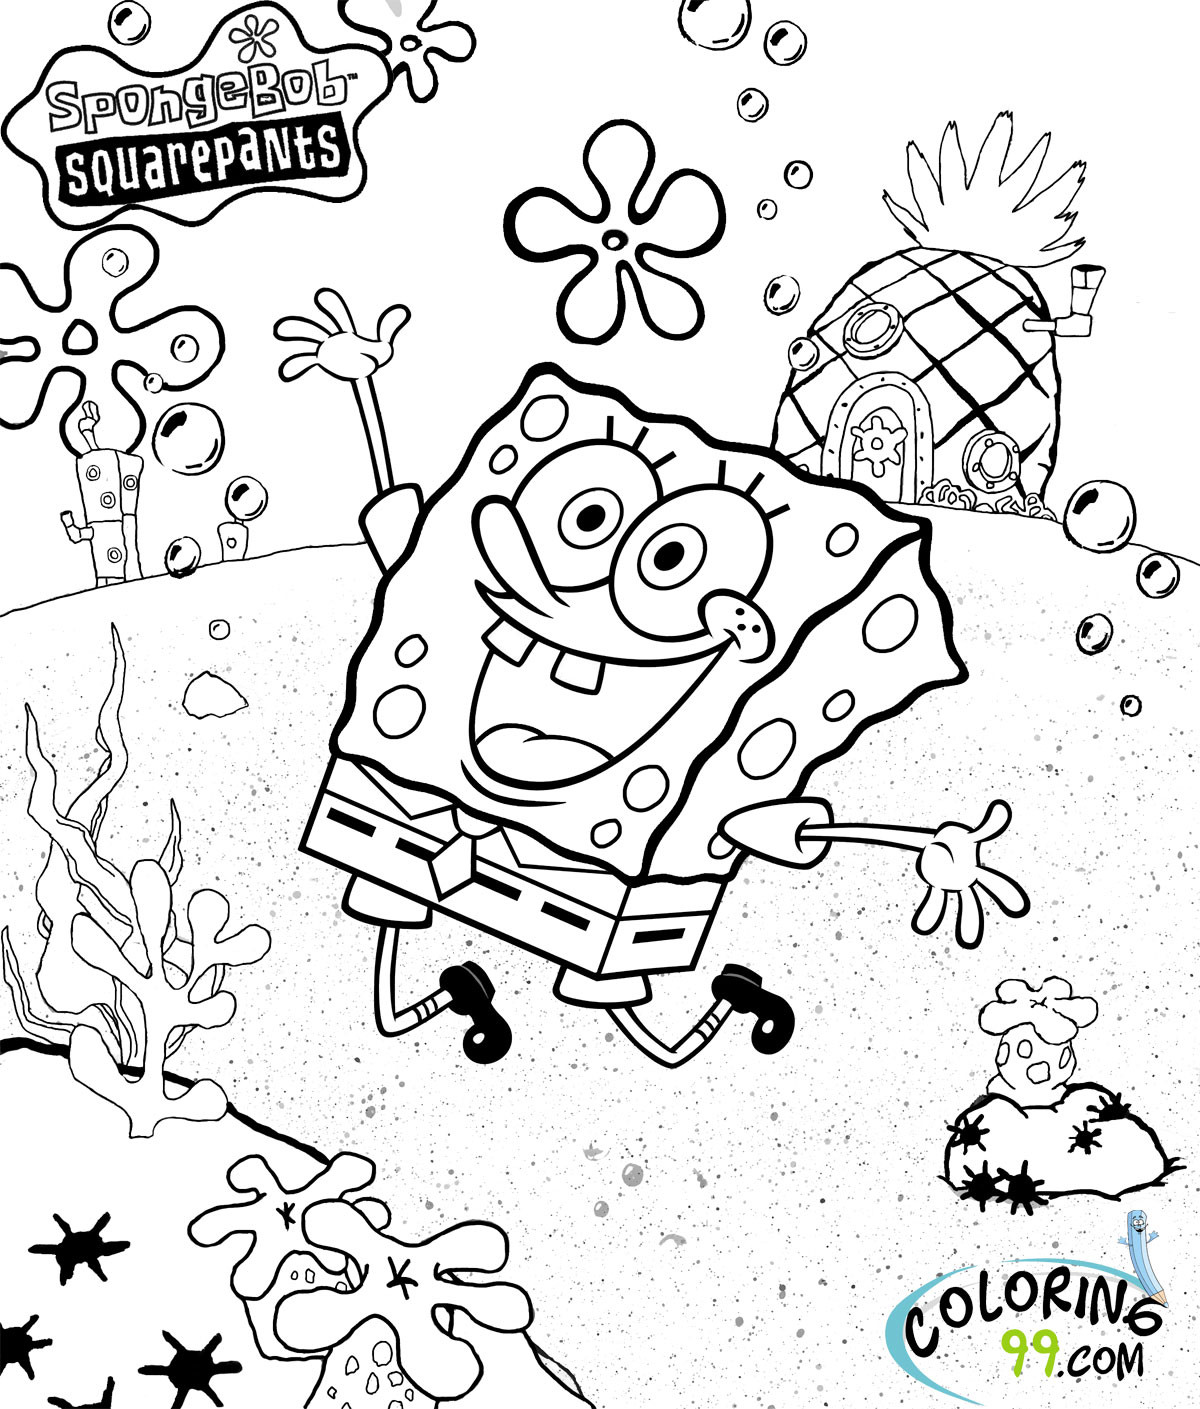 Spongebob Coloring Pages For Boys
 Spongebob Squarepants Coloring Pages